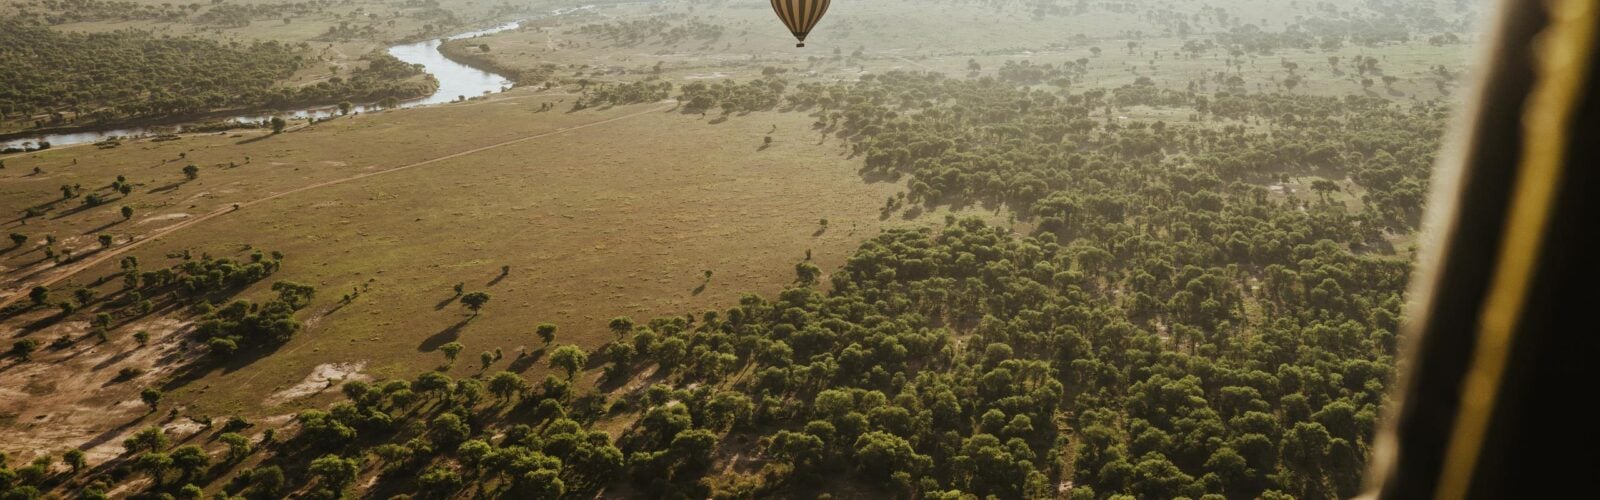 Hot air balloon over the Serengeti National Park, Tanzania